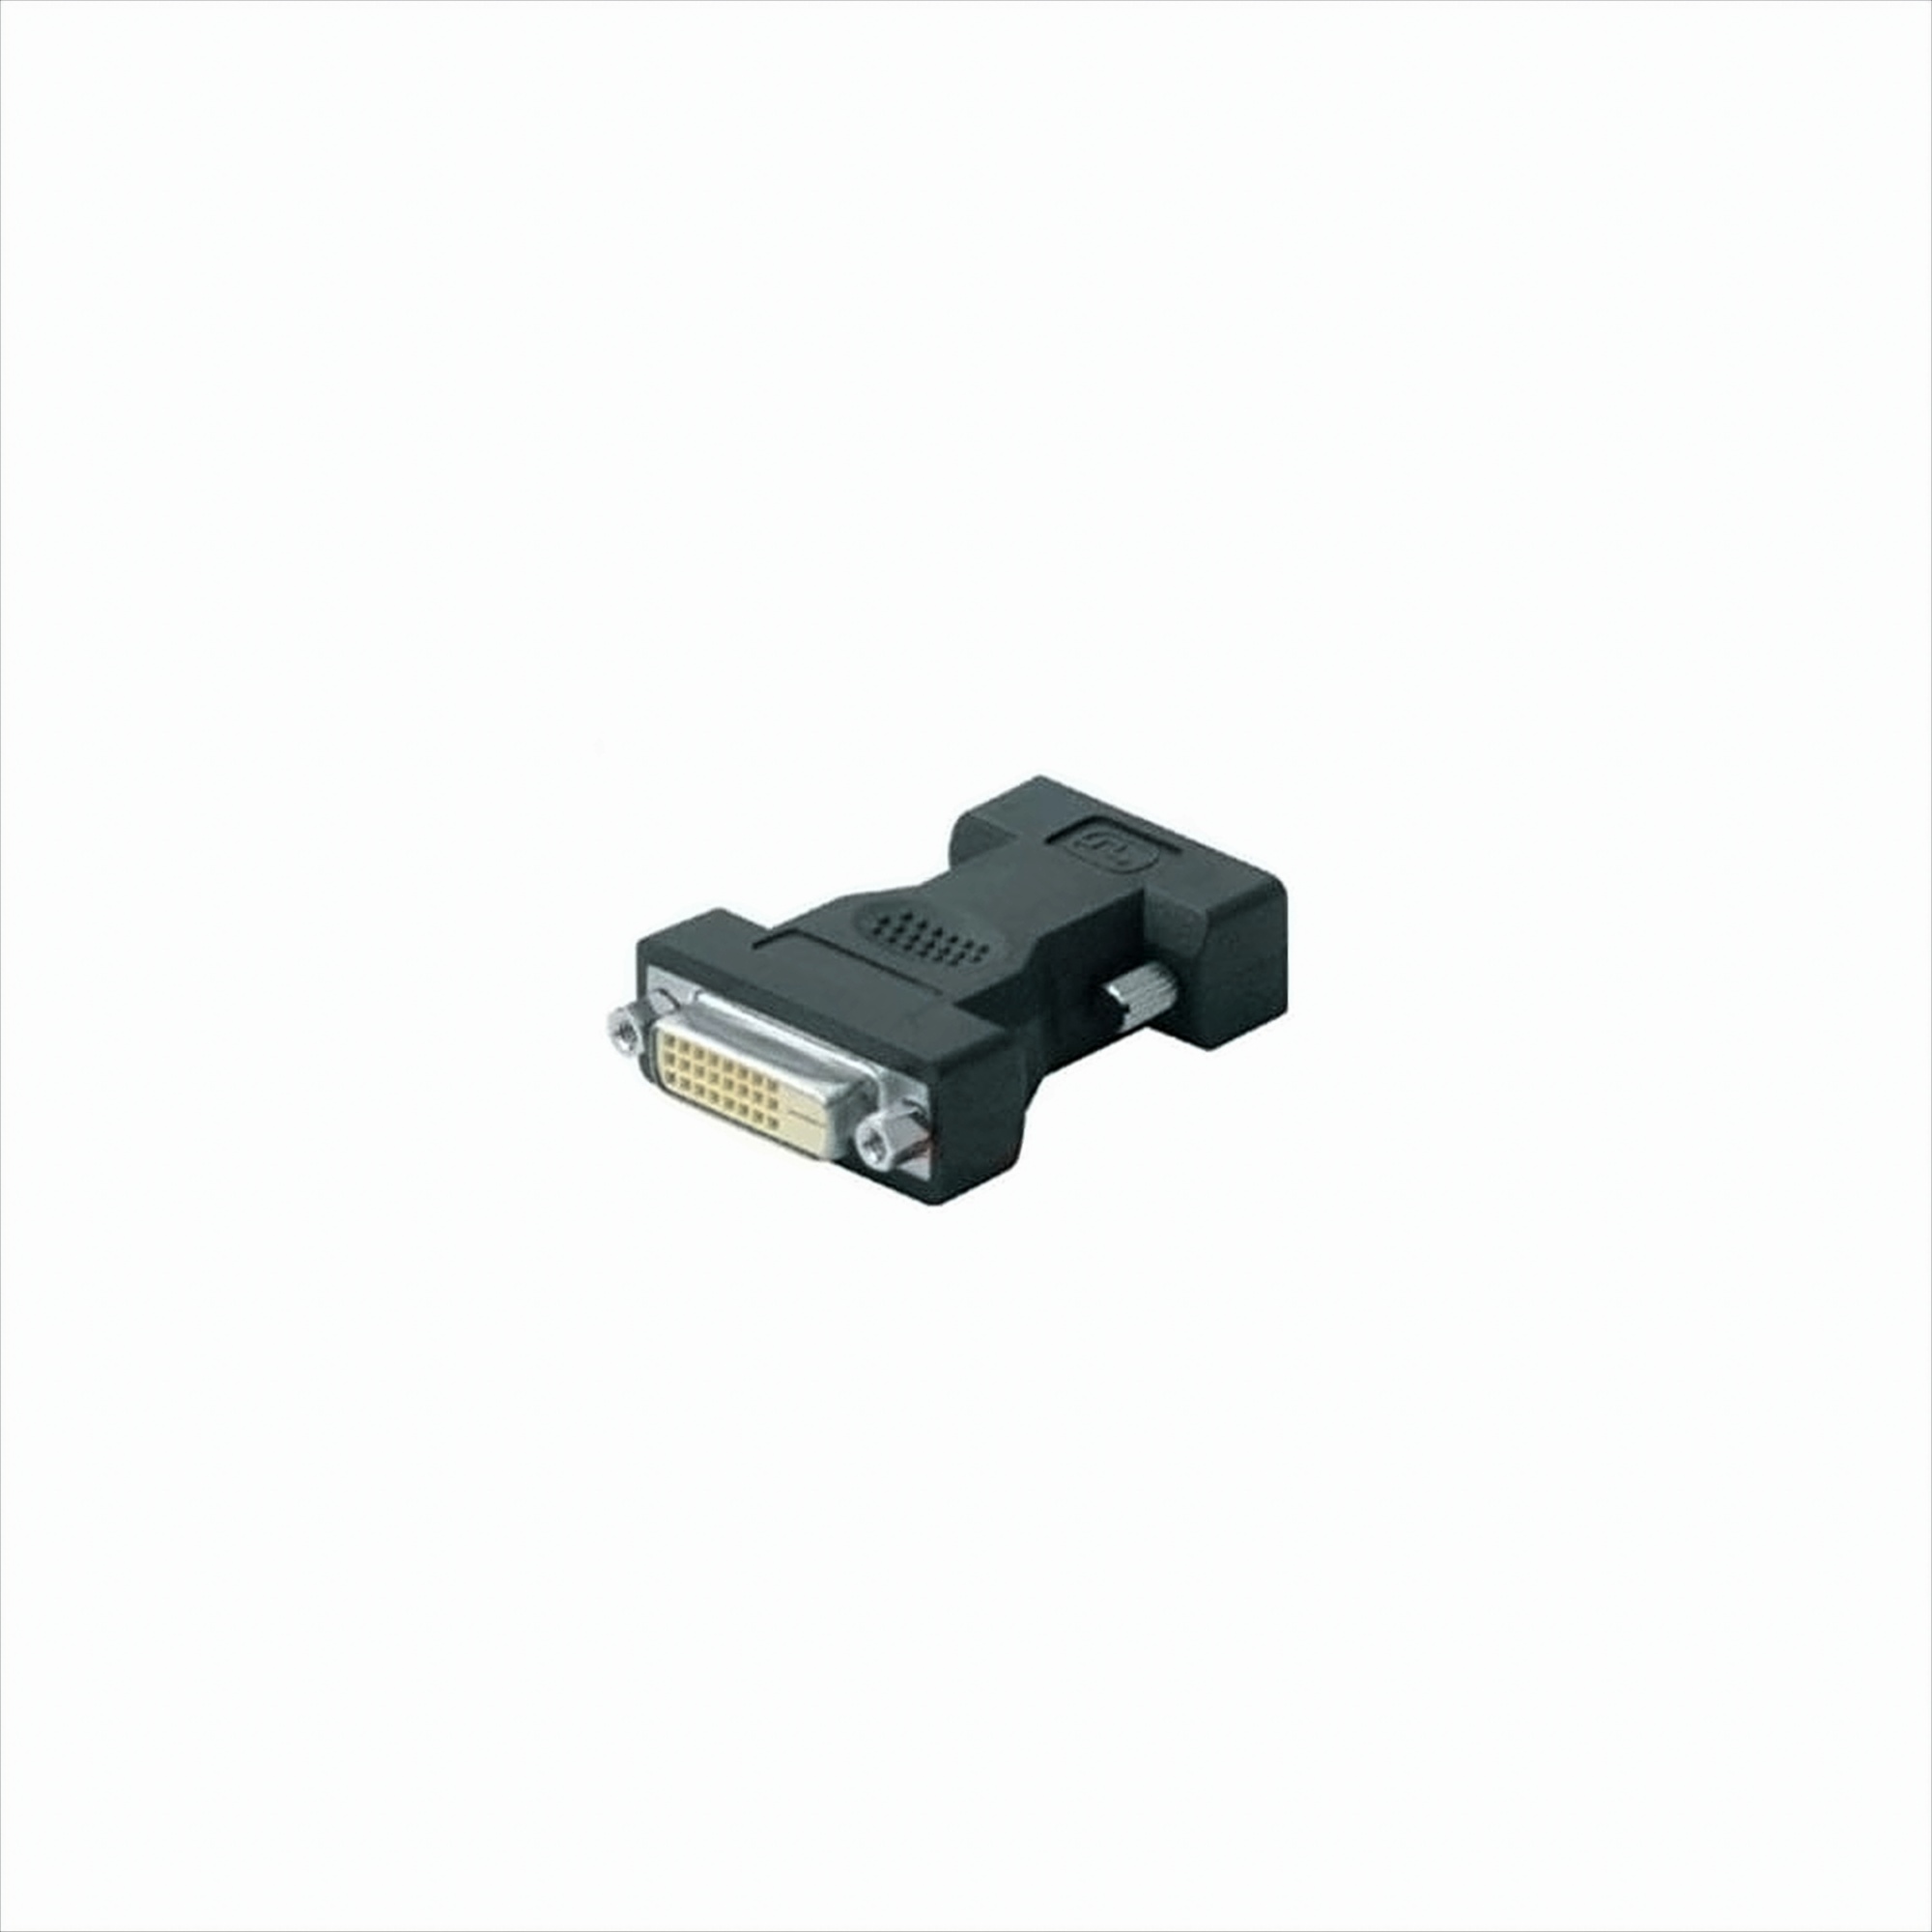 Ligawo 6517048 DVI-D Adapter 24+1 - Stecker auf Buchse - DVI Verlängerung, schwarz